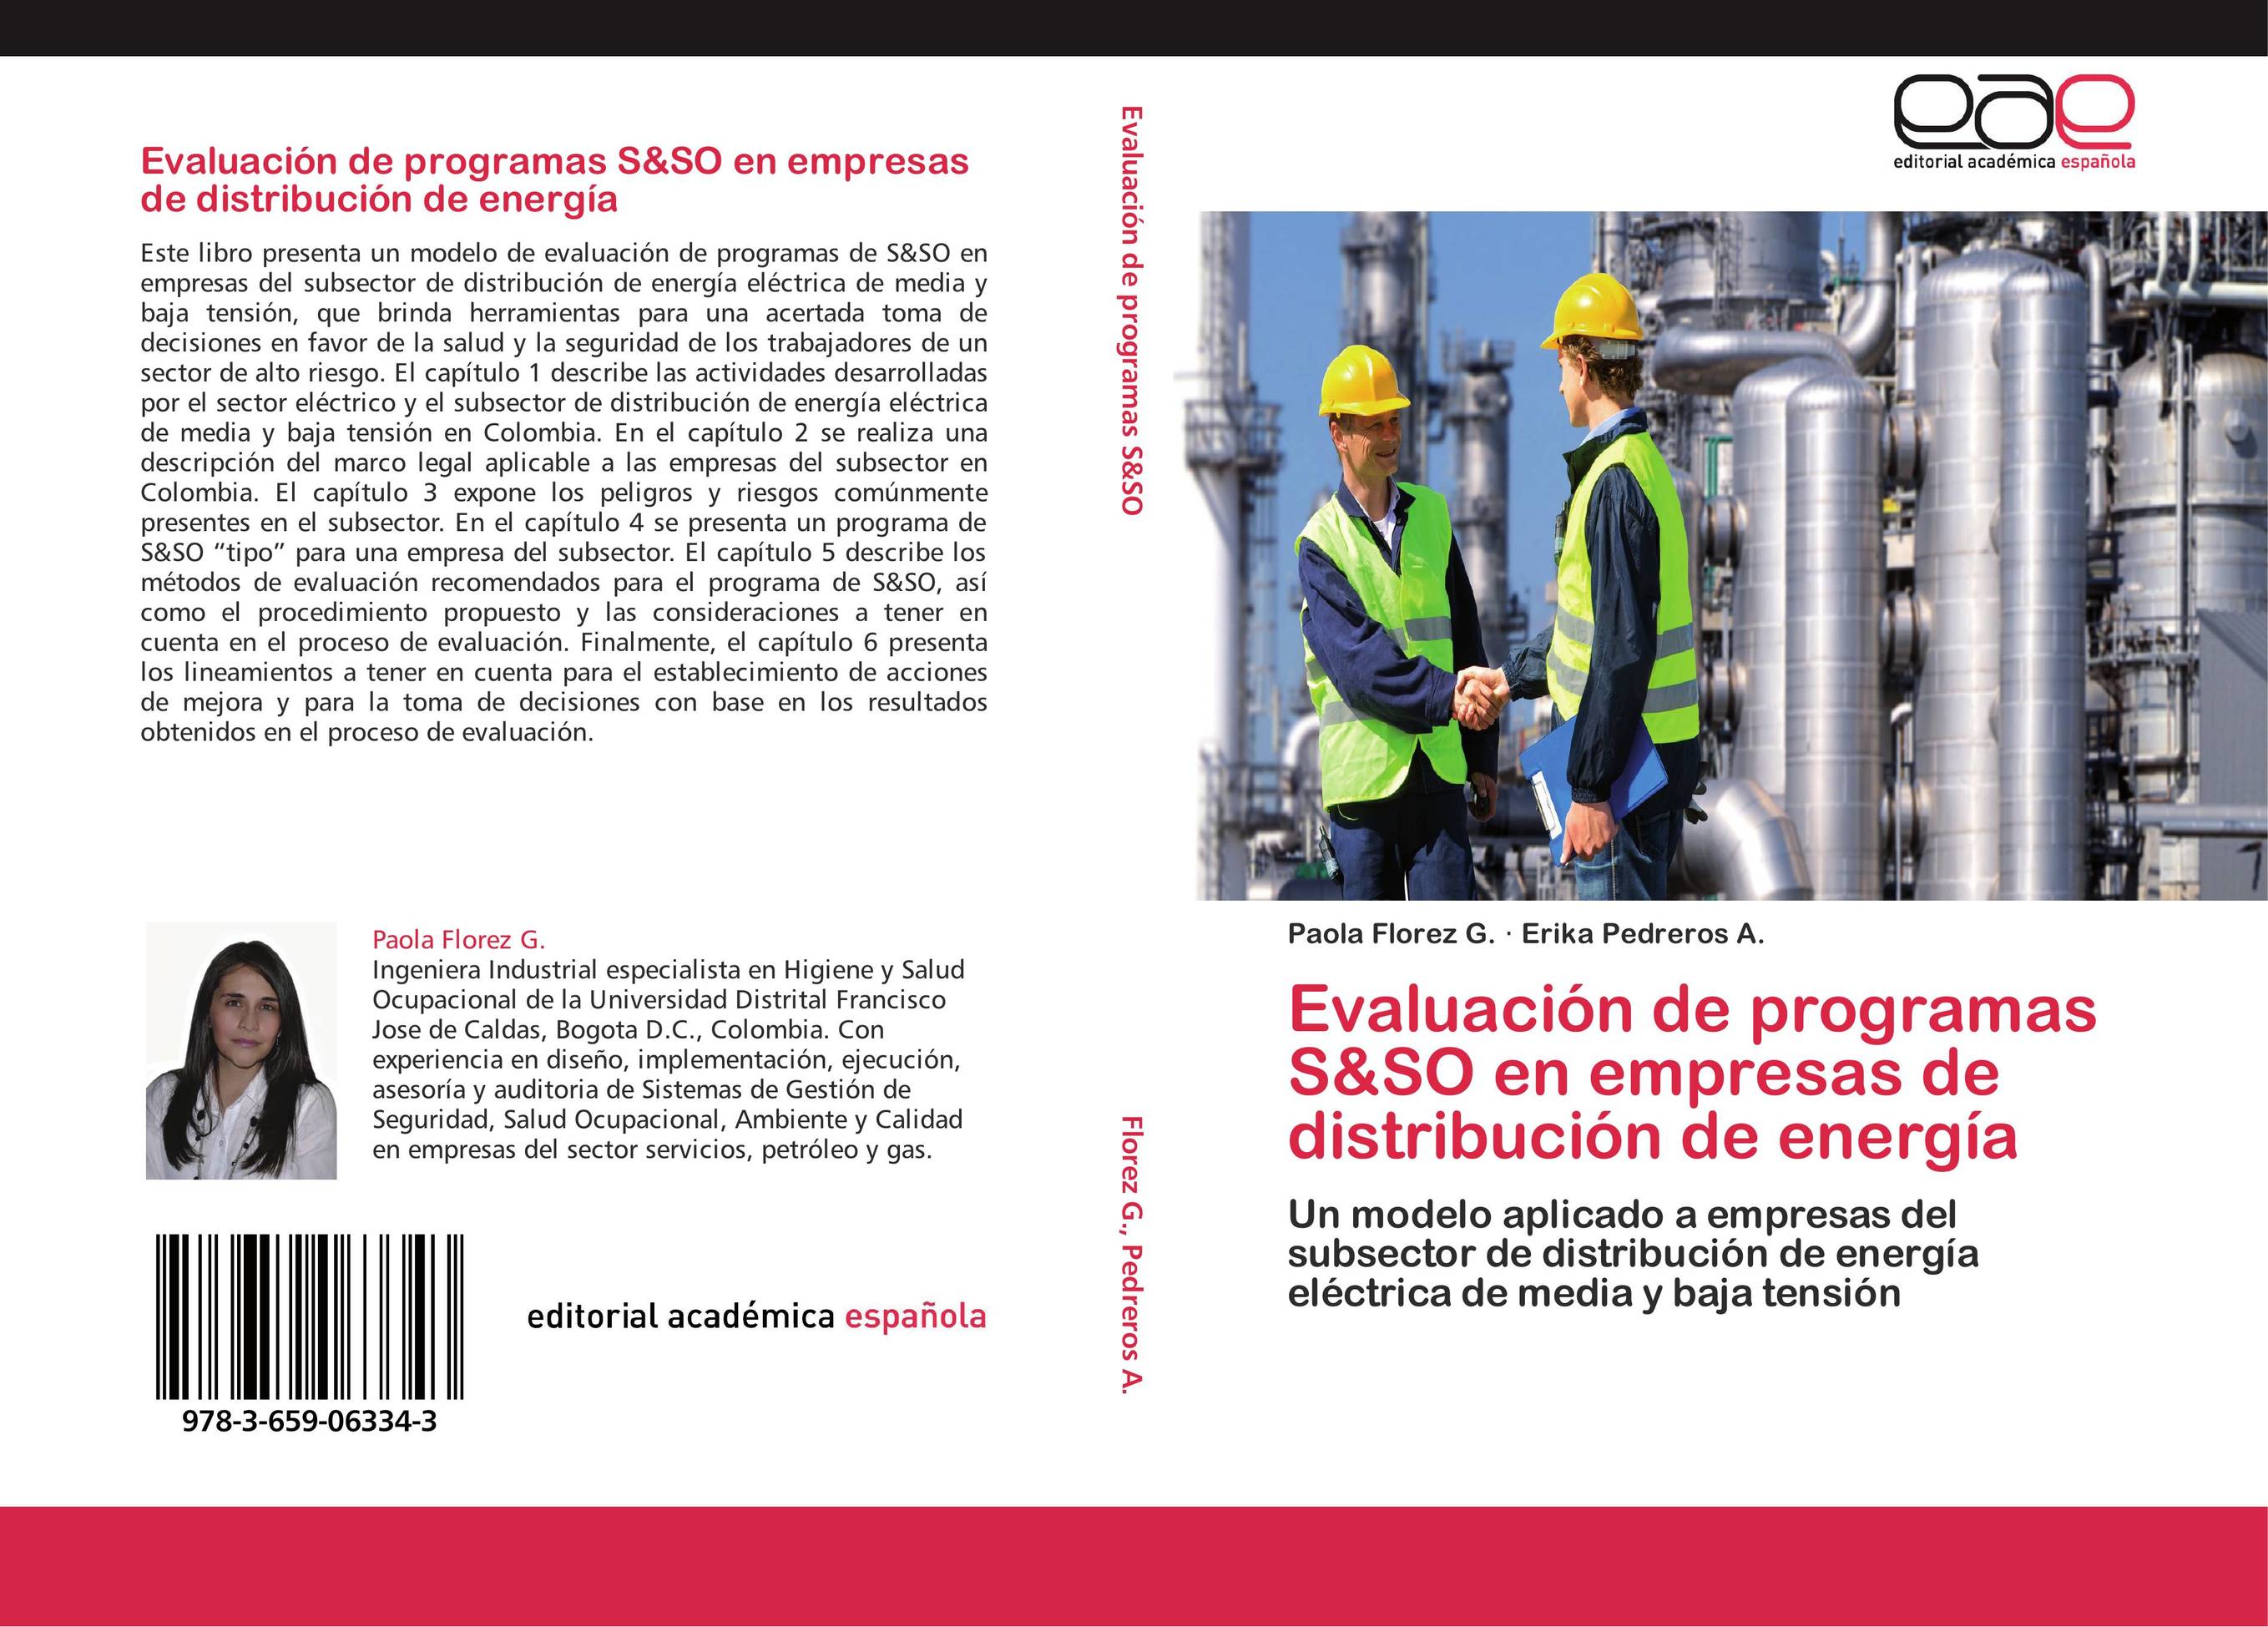 Evaluación de programas S&SO en empresas de distribución de energía